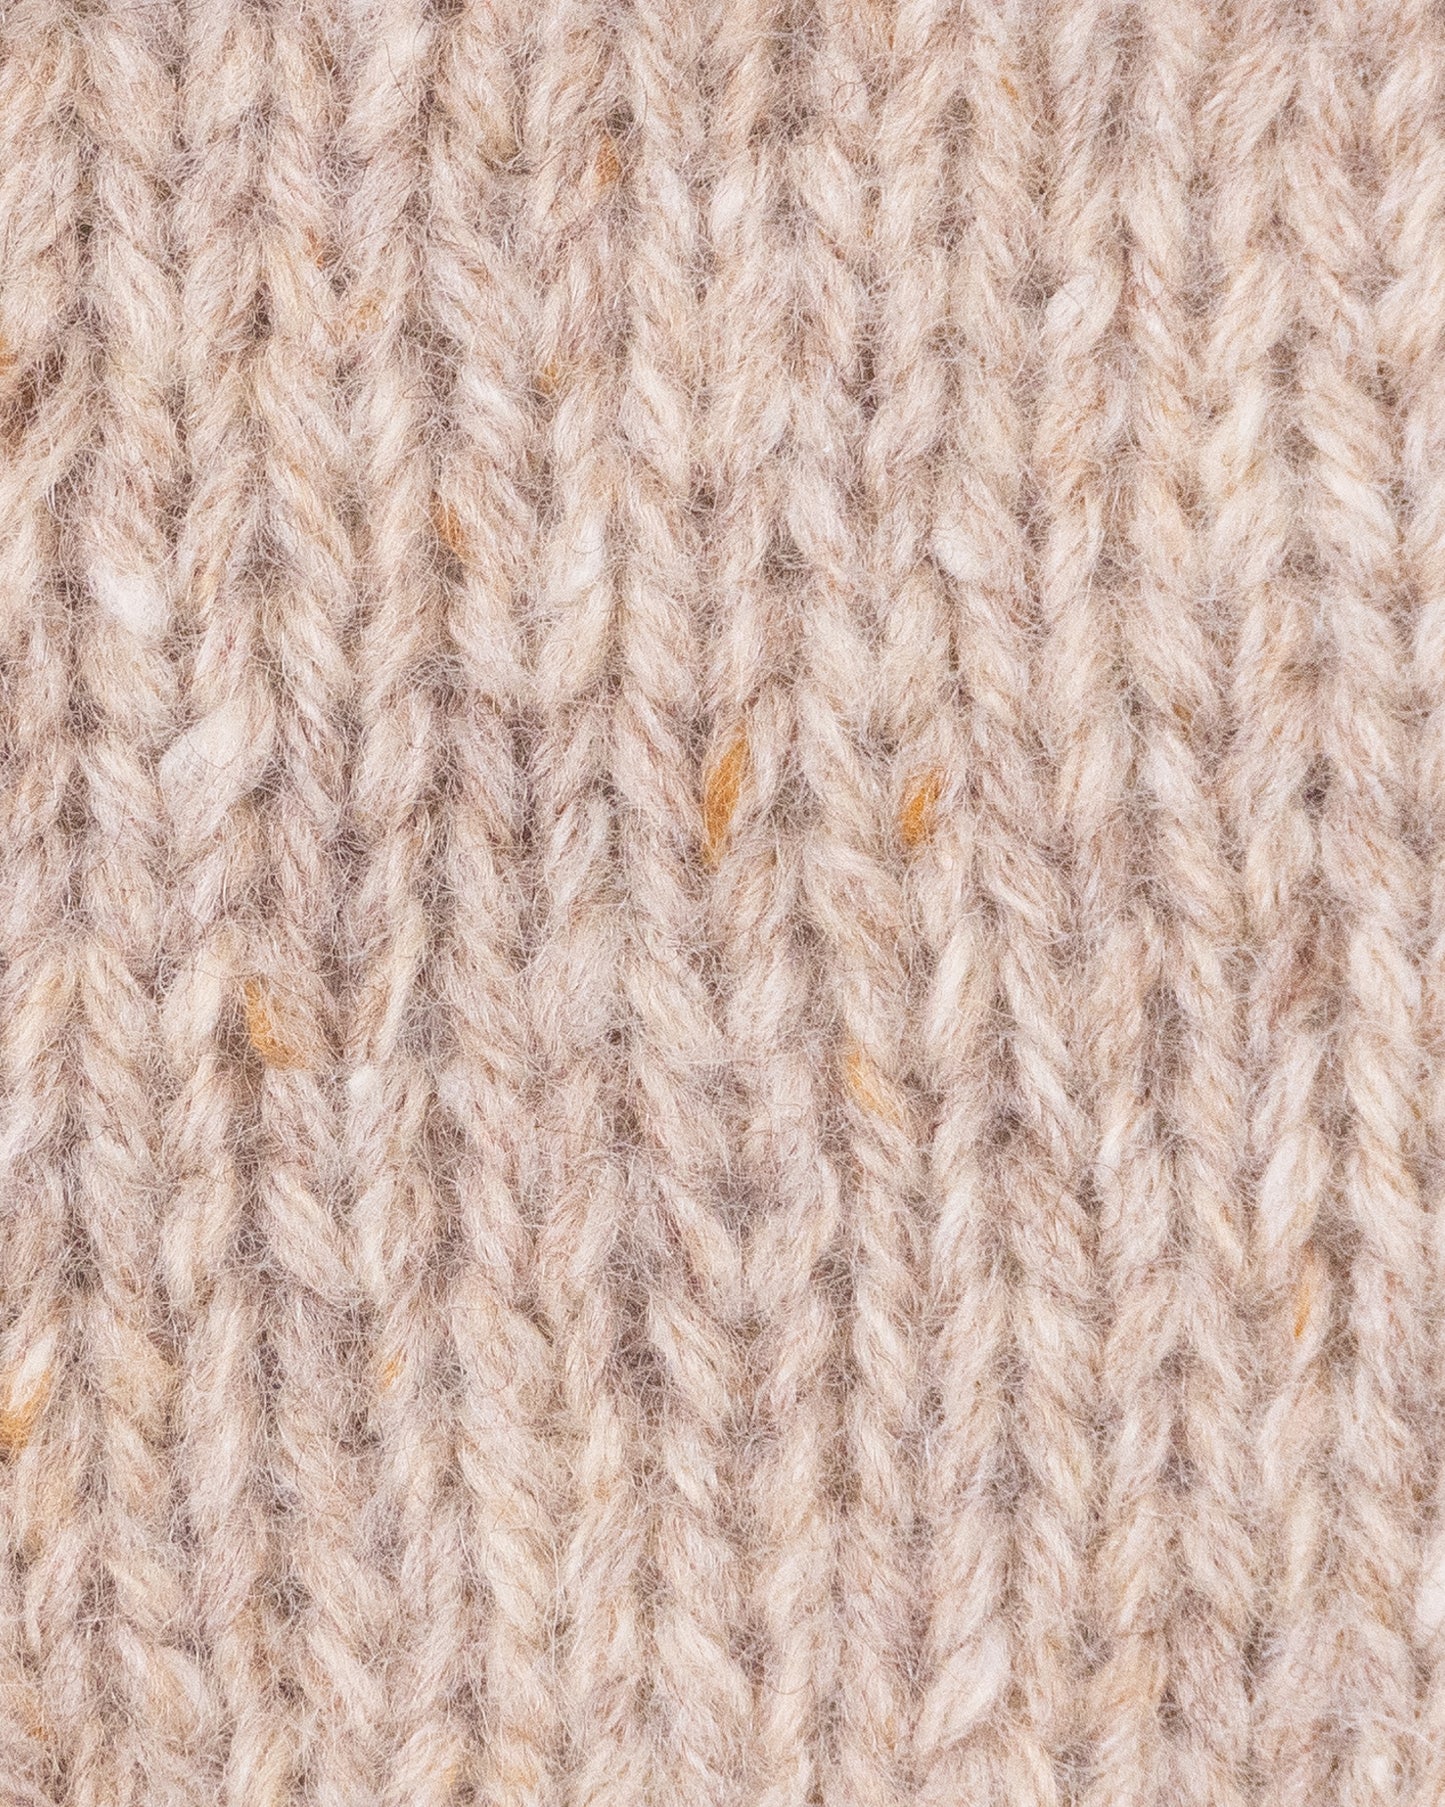 Tweed Supreme - LINEN